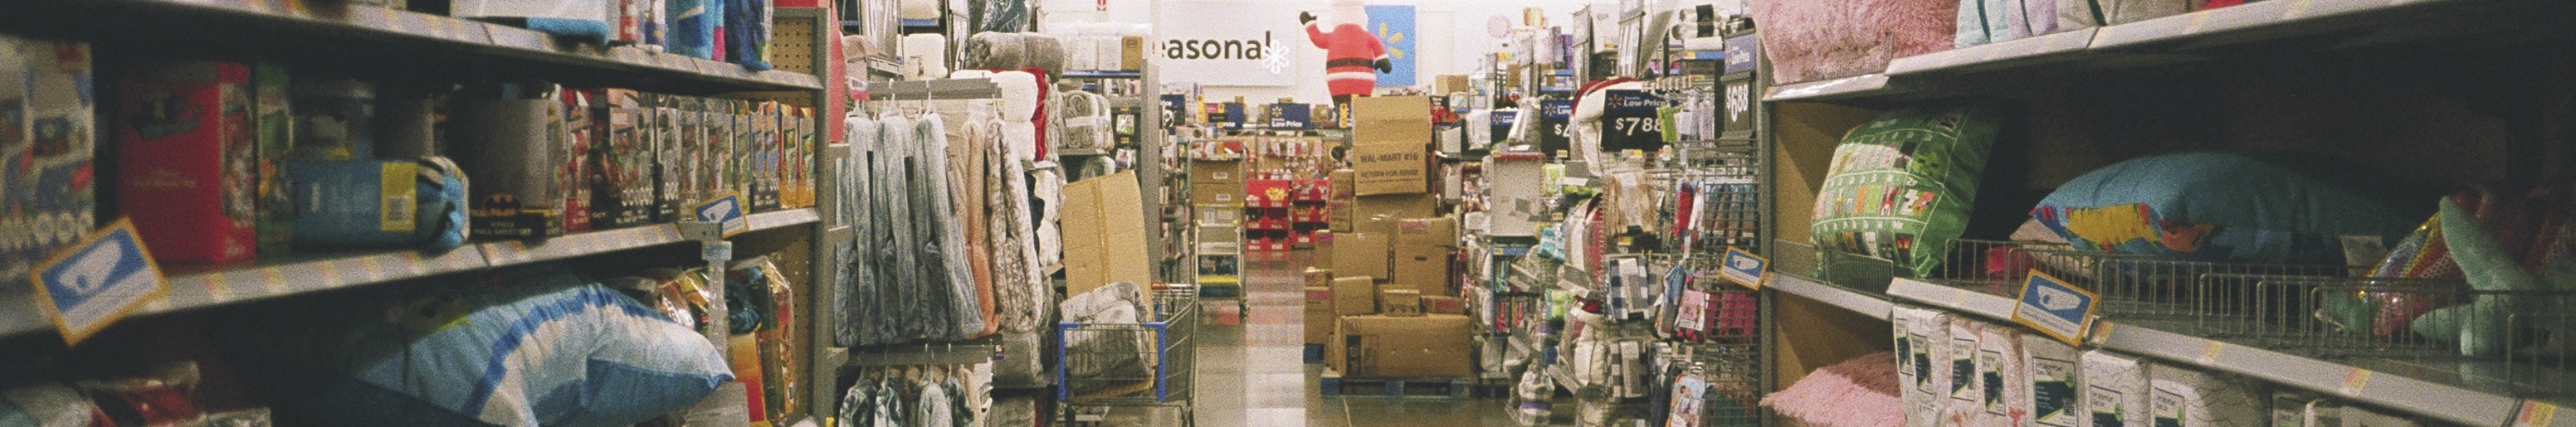 Each week, Walmart brings a wide range of general merchandise to 240 million customers